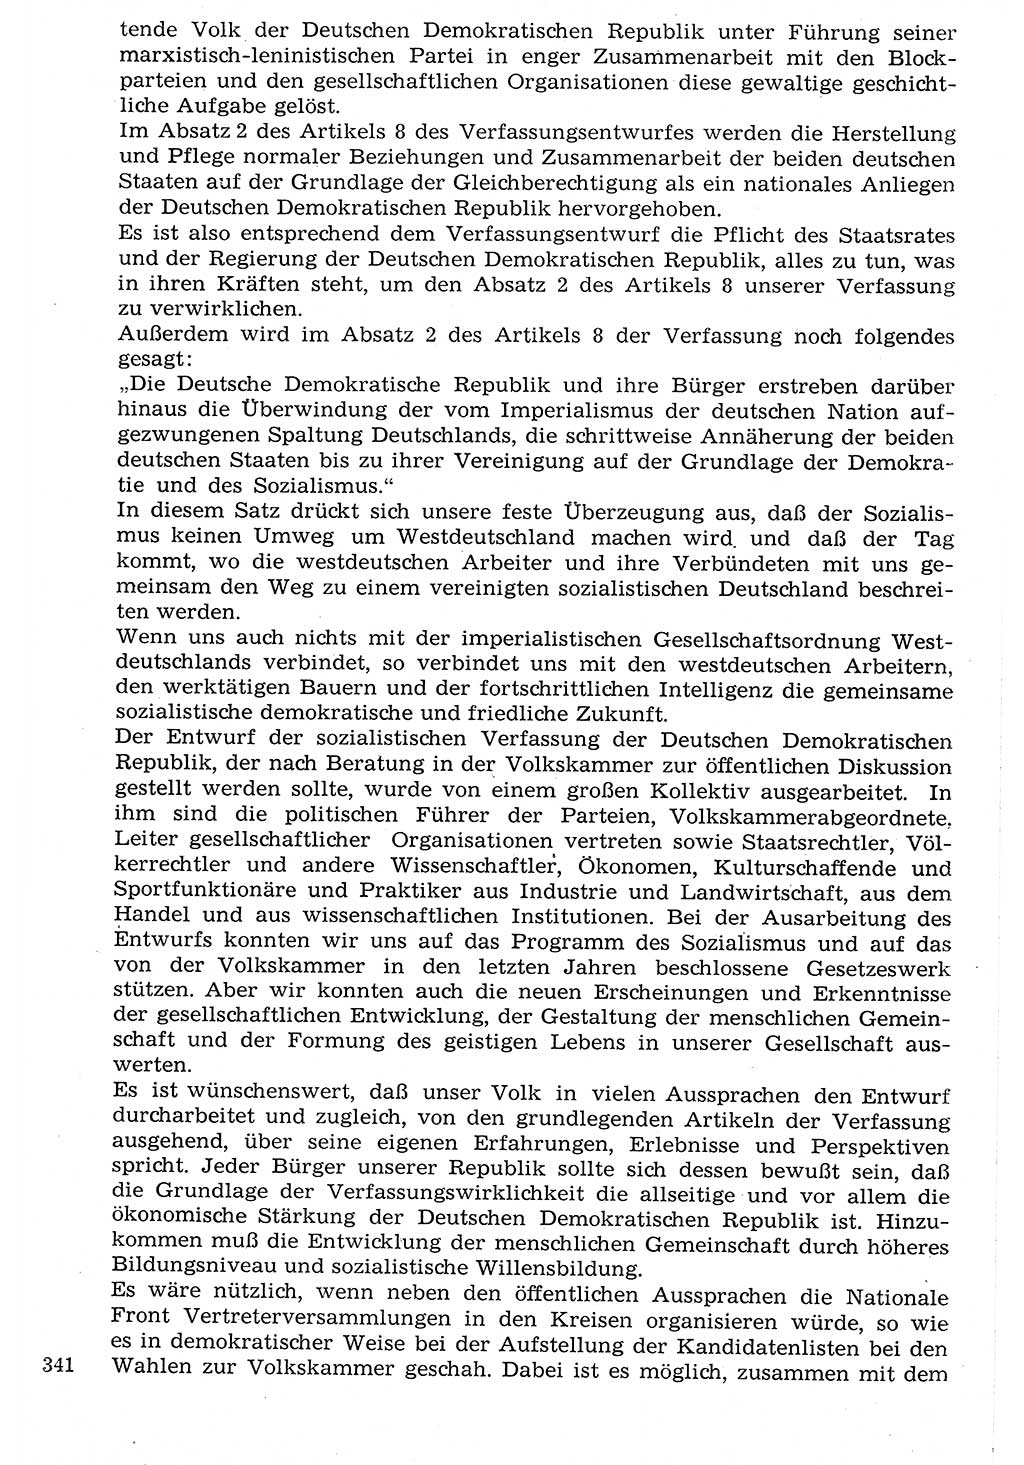 Staat und Recht (StuR), 17. Jahrgang [Deutsche Demokratische Republik (DDR)] 1968, Seite 341 (StuR DDR 1968, S. 341)